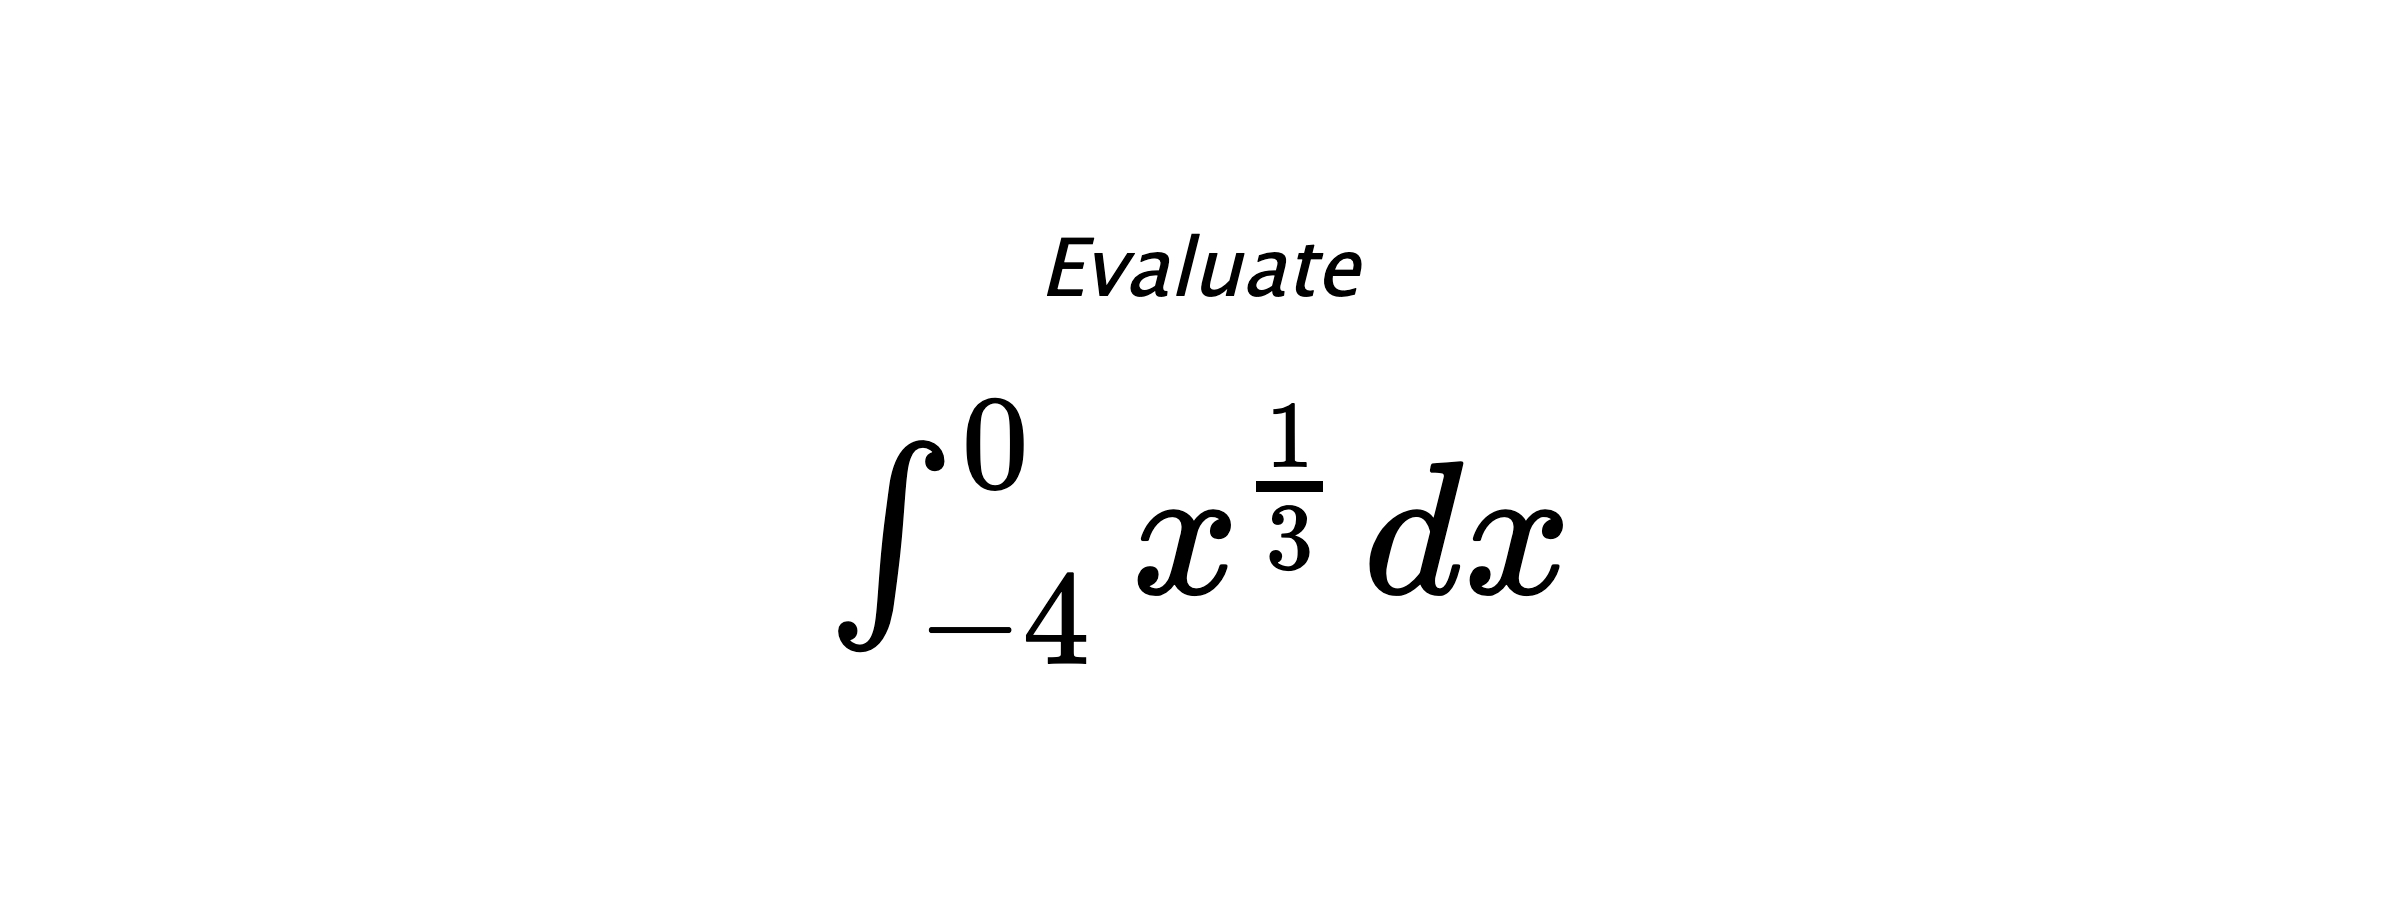 Evaluate $ \int_{-4}^{0} x^{\frac{1}{3}} \hspace{0.2cm} dx $